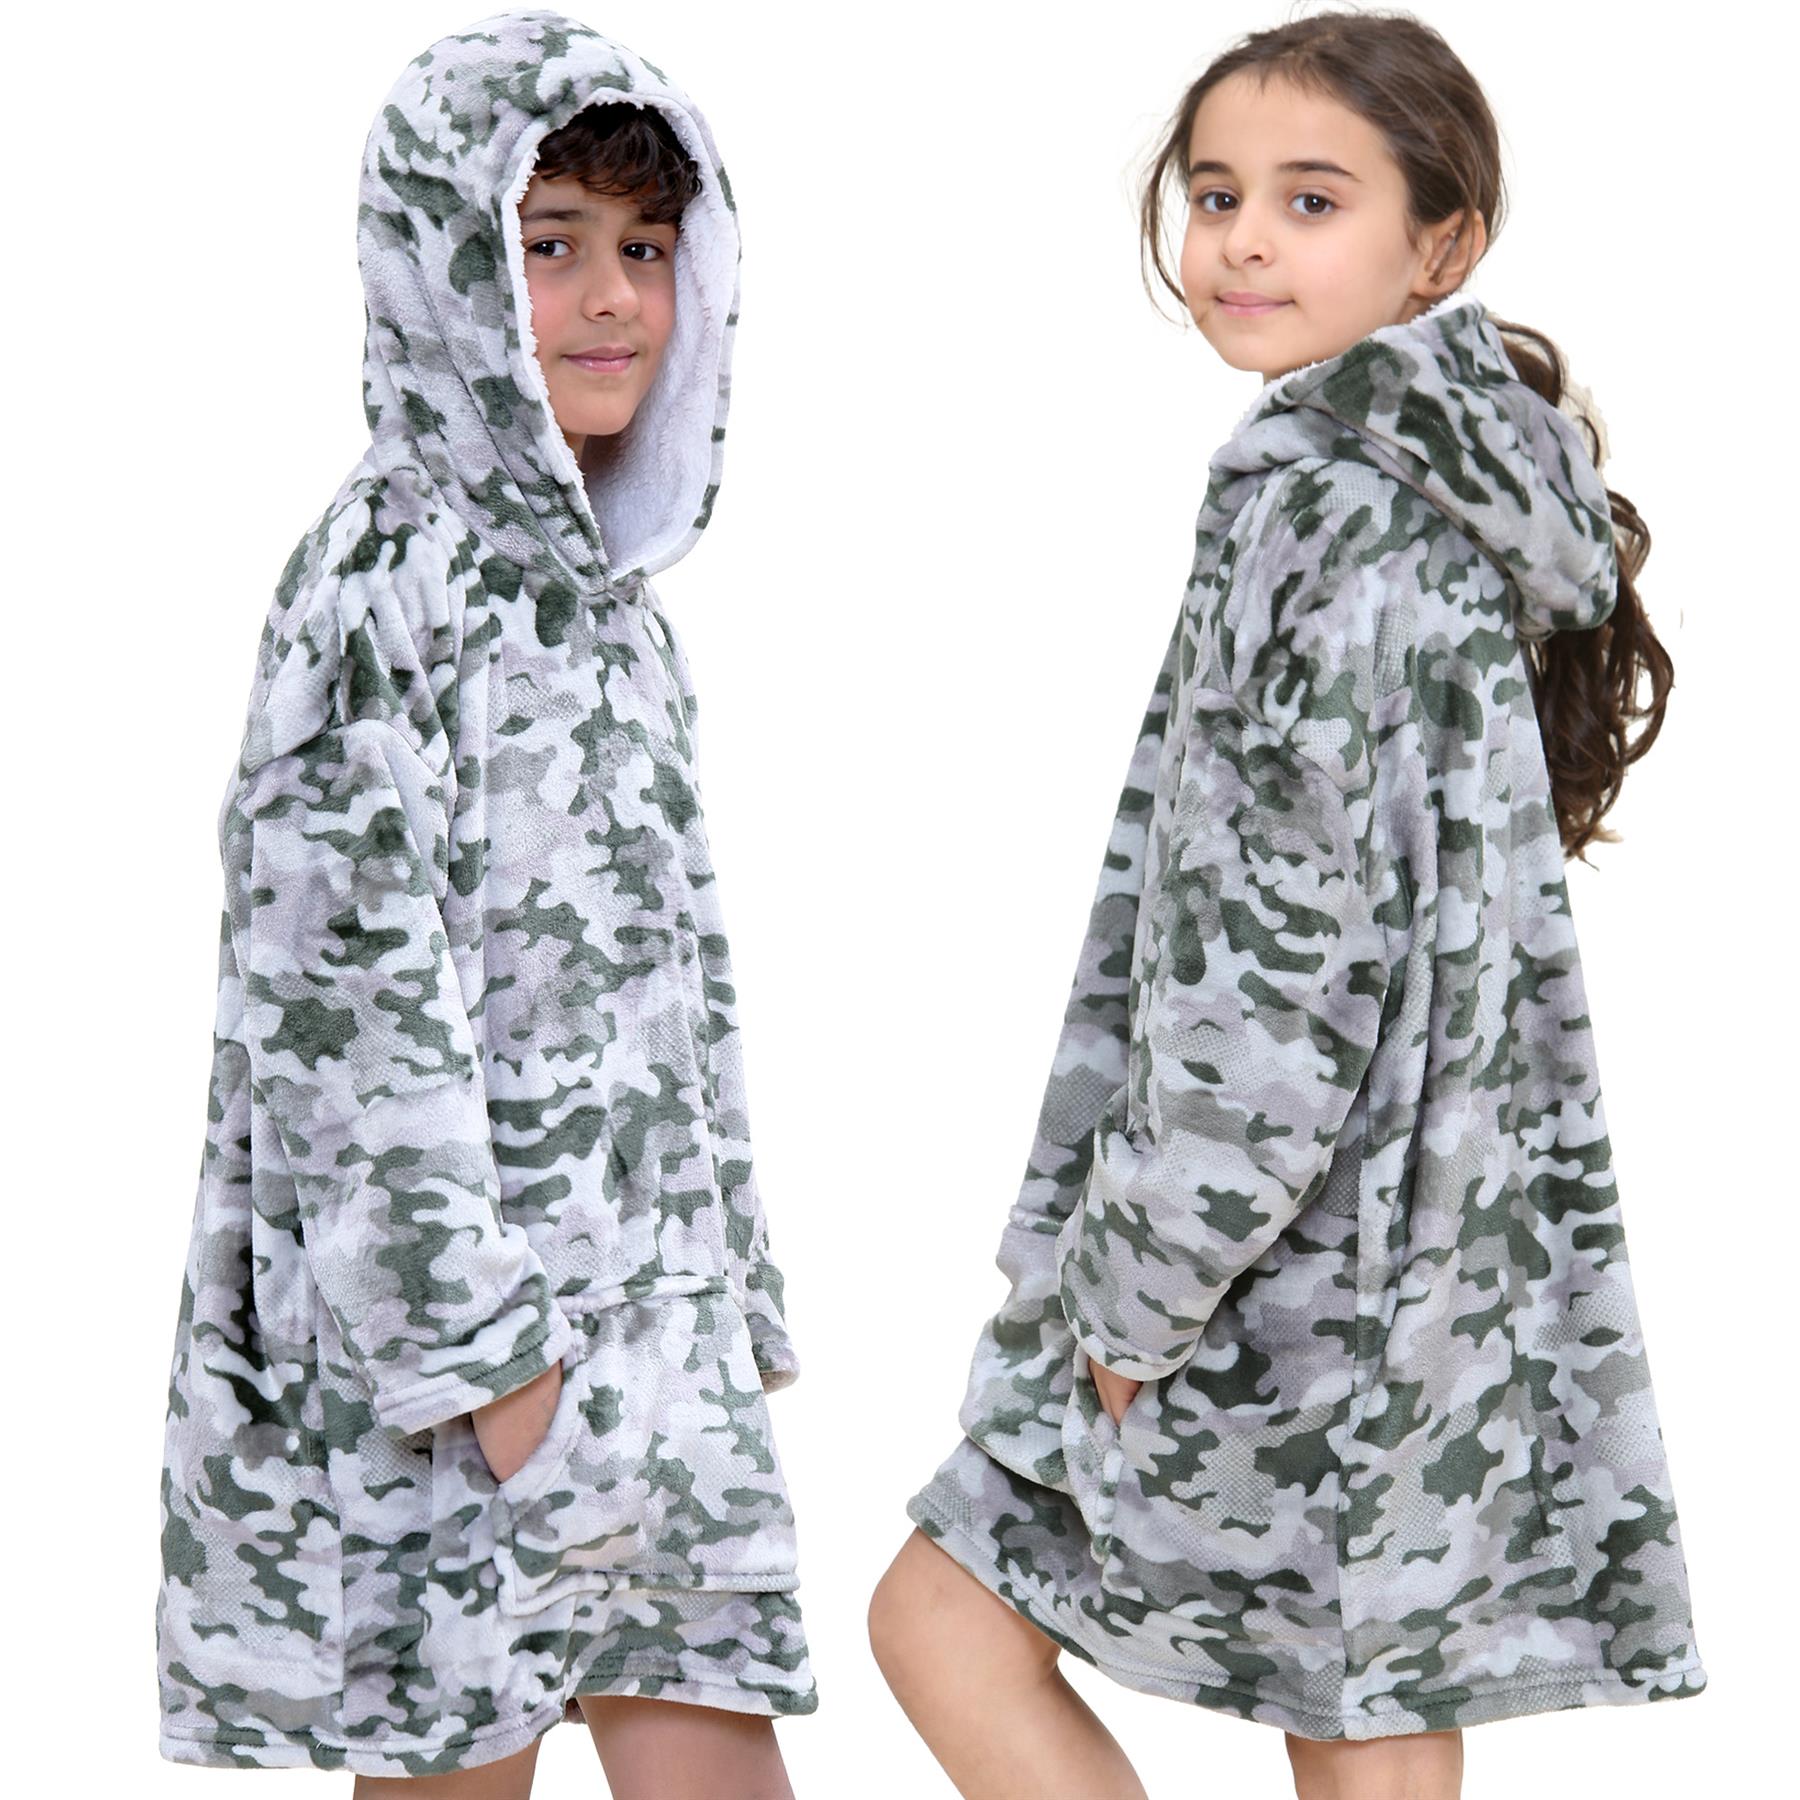 Kids Girls Boys Oversized Hoodie Camouflage Charcoal Print Fleece Snuggle